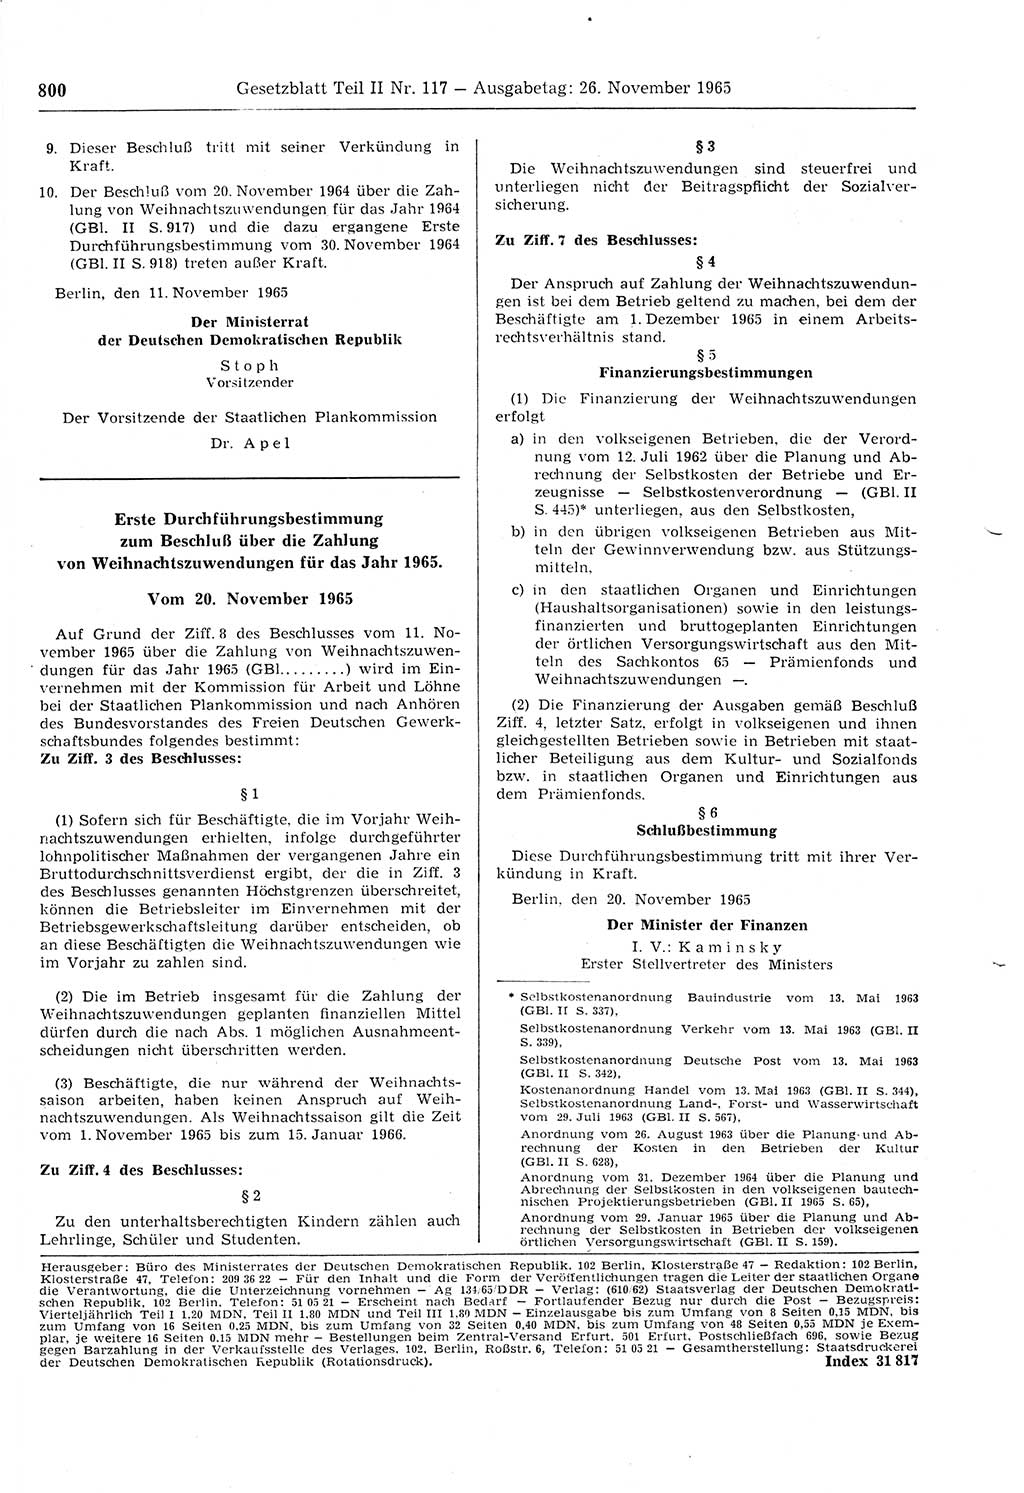 Gesetzblatt (GBl.) der Deutschen Demokratischen Republik (DDR) Teil ⅠⅠ 1965, Seite 800 (GBl. DDR ⅠⅠ 1965, S. 800)